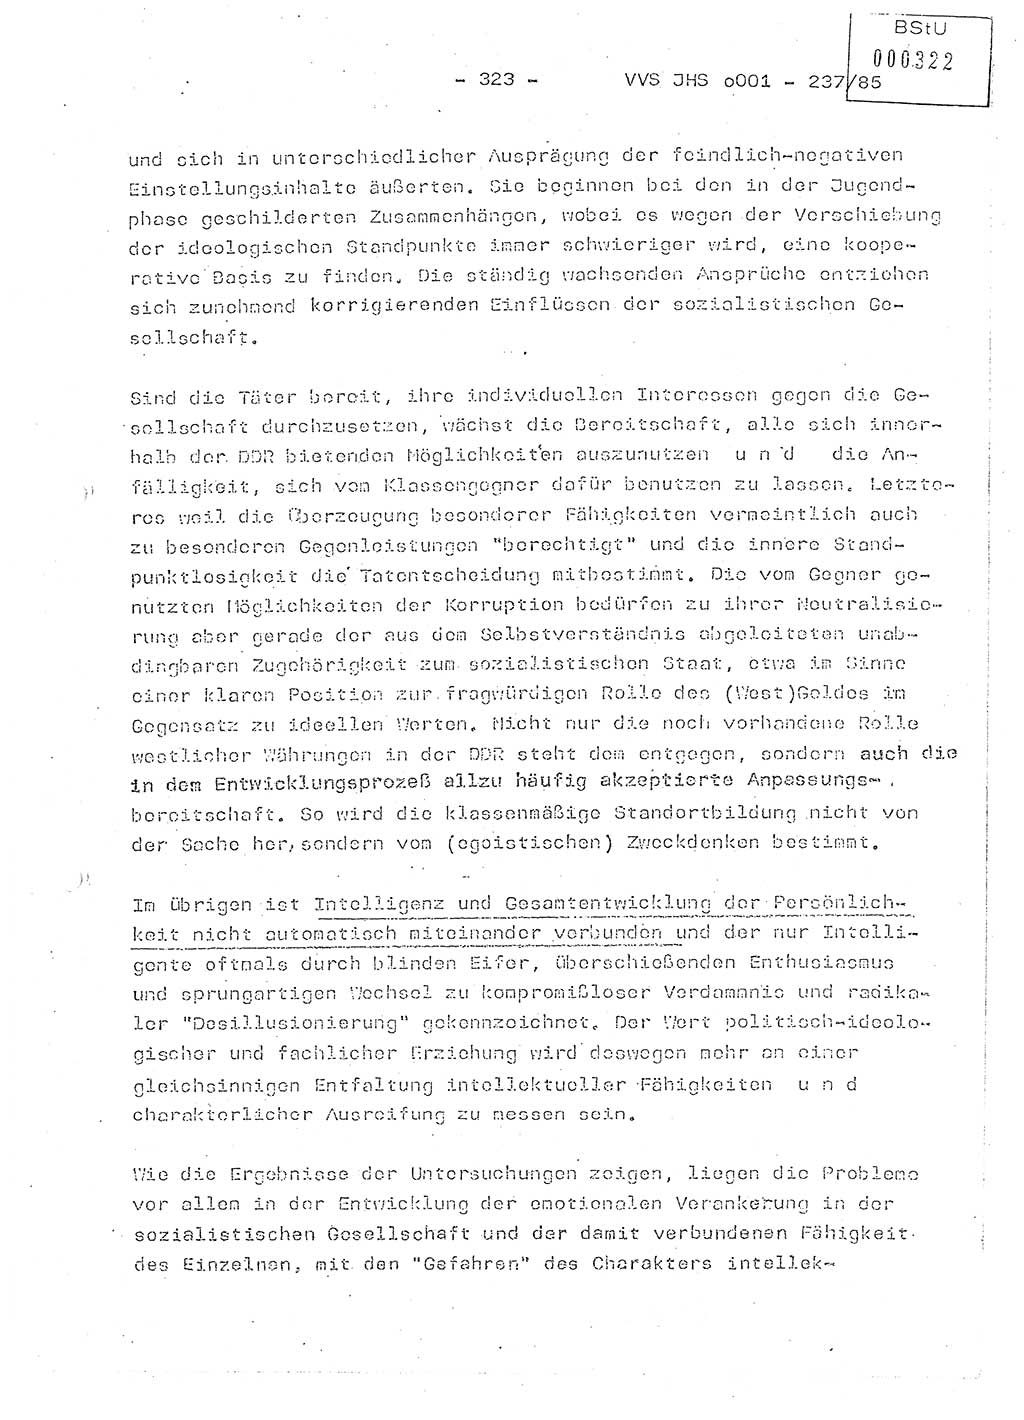 Dissertation Oberstleutnant Peter Jakulski (JHS), Oberstleutnat Christian Rudolph (HA Ⅸ), Major Horst Böttger (ZMD), Major Wolfgang Grüneberg (JHS), Major Albert Meutsch (JHS), Ministerium für Staatssicherheit (MfS) [Deutsche Demokratische Republik (DDR)], Juristische Hochschule (JHS), Vertrauliche Verschlußsache (VVS) o001-237/85, Potsdam 1985, Seite 323 (Diss. MfS DDR JHS VVS o001-237/85 1985, S. 323)